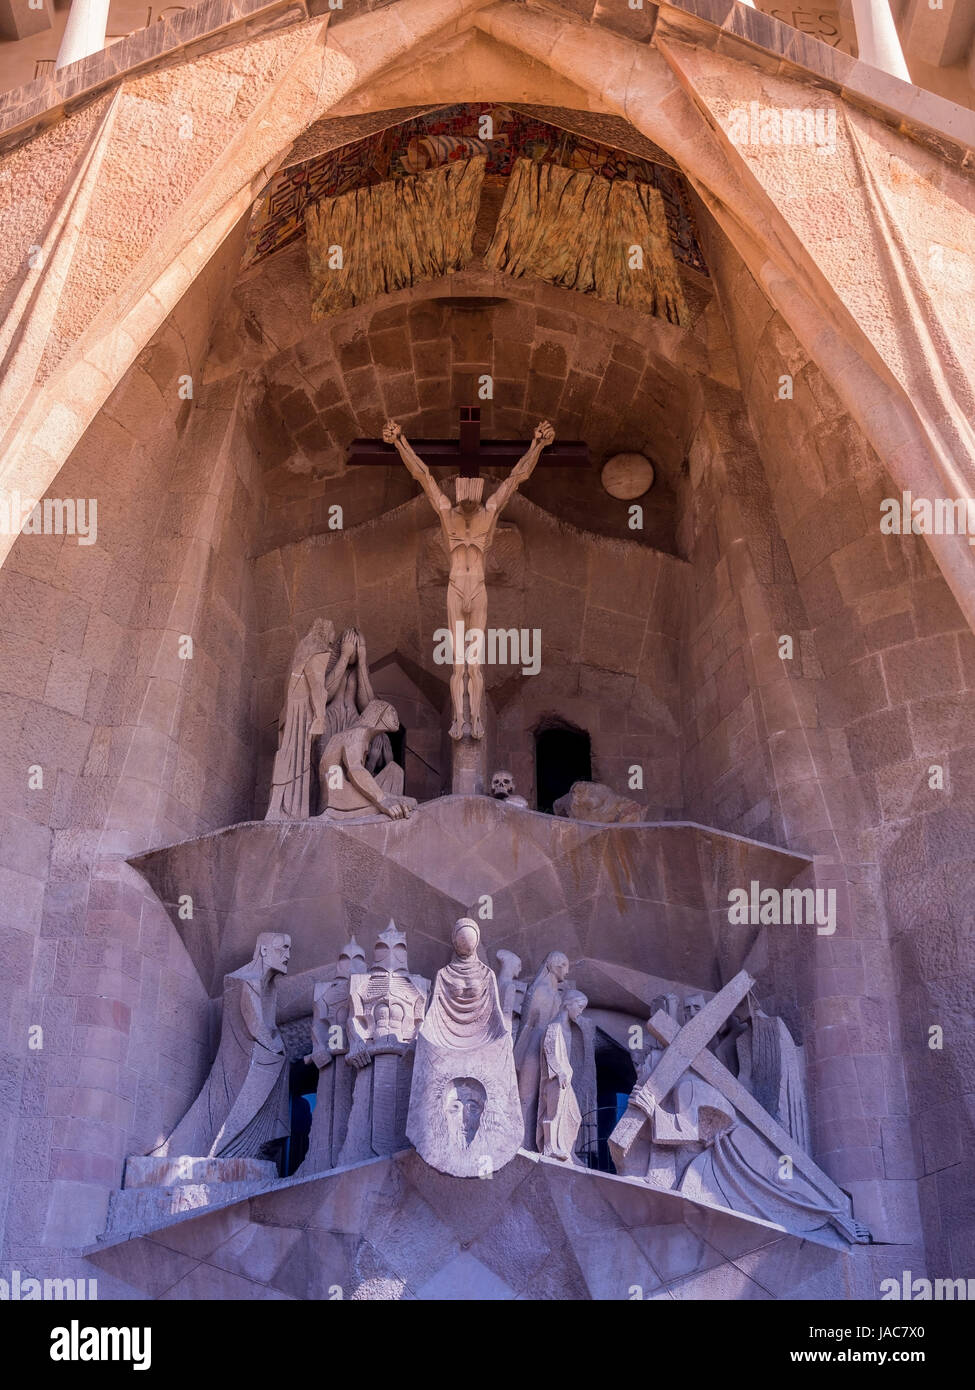 L'enregistrement sur le terrain de la Sagrada Familia à Barcelone, Espagne, Aussenaufnahme der Sagrada Familia à Barcelone, Espagne Banque D'Images